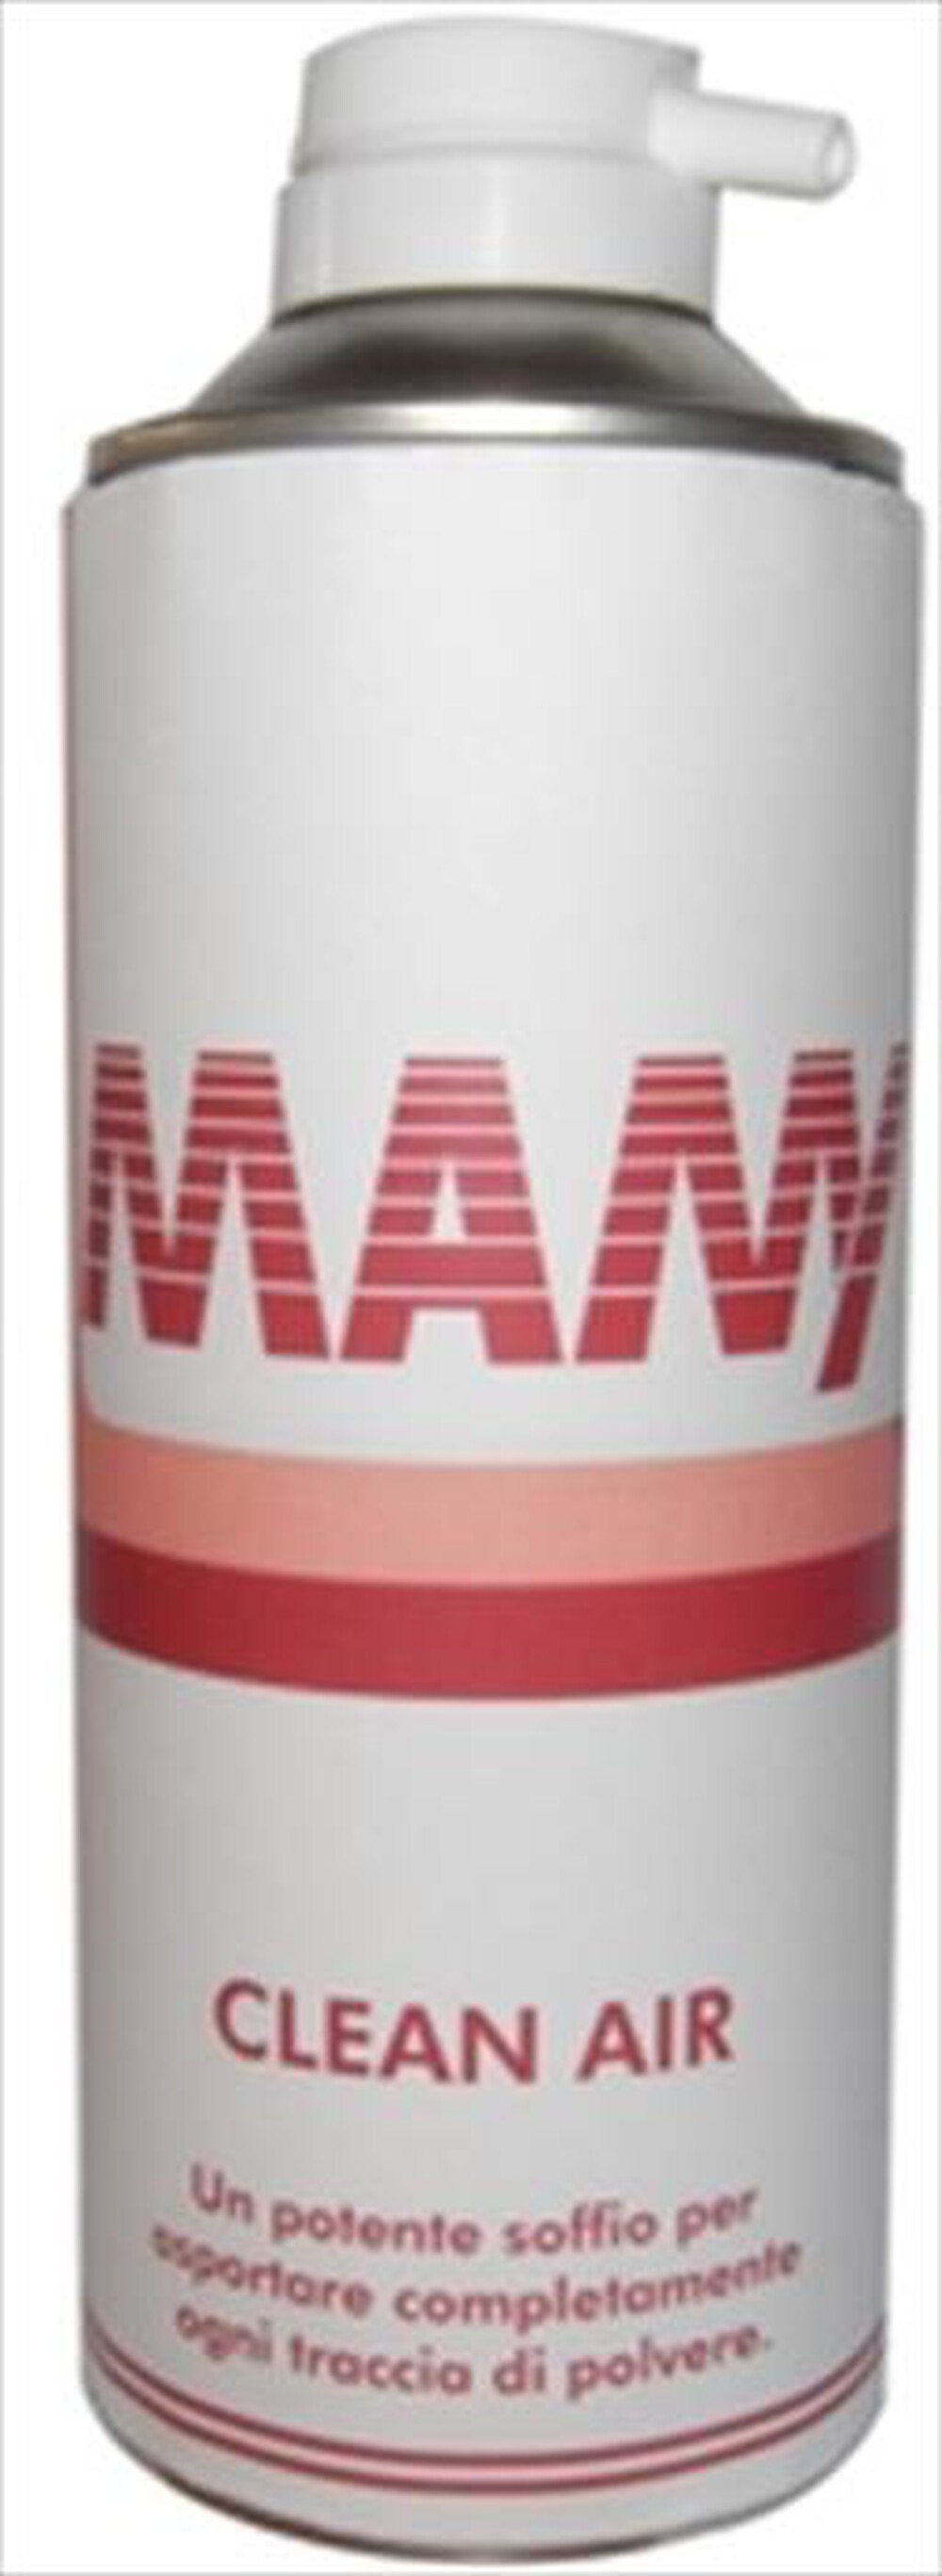 "HAMA - 5000016 Mamy - bomboletta aria compressa 400 ml-BIANCO/ROSSO"